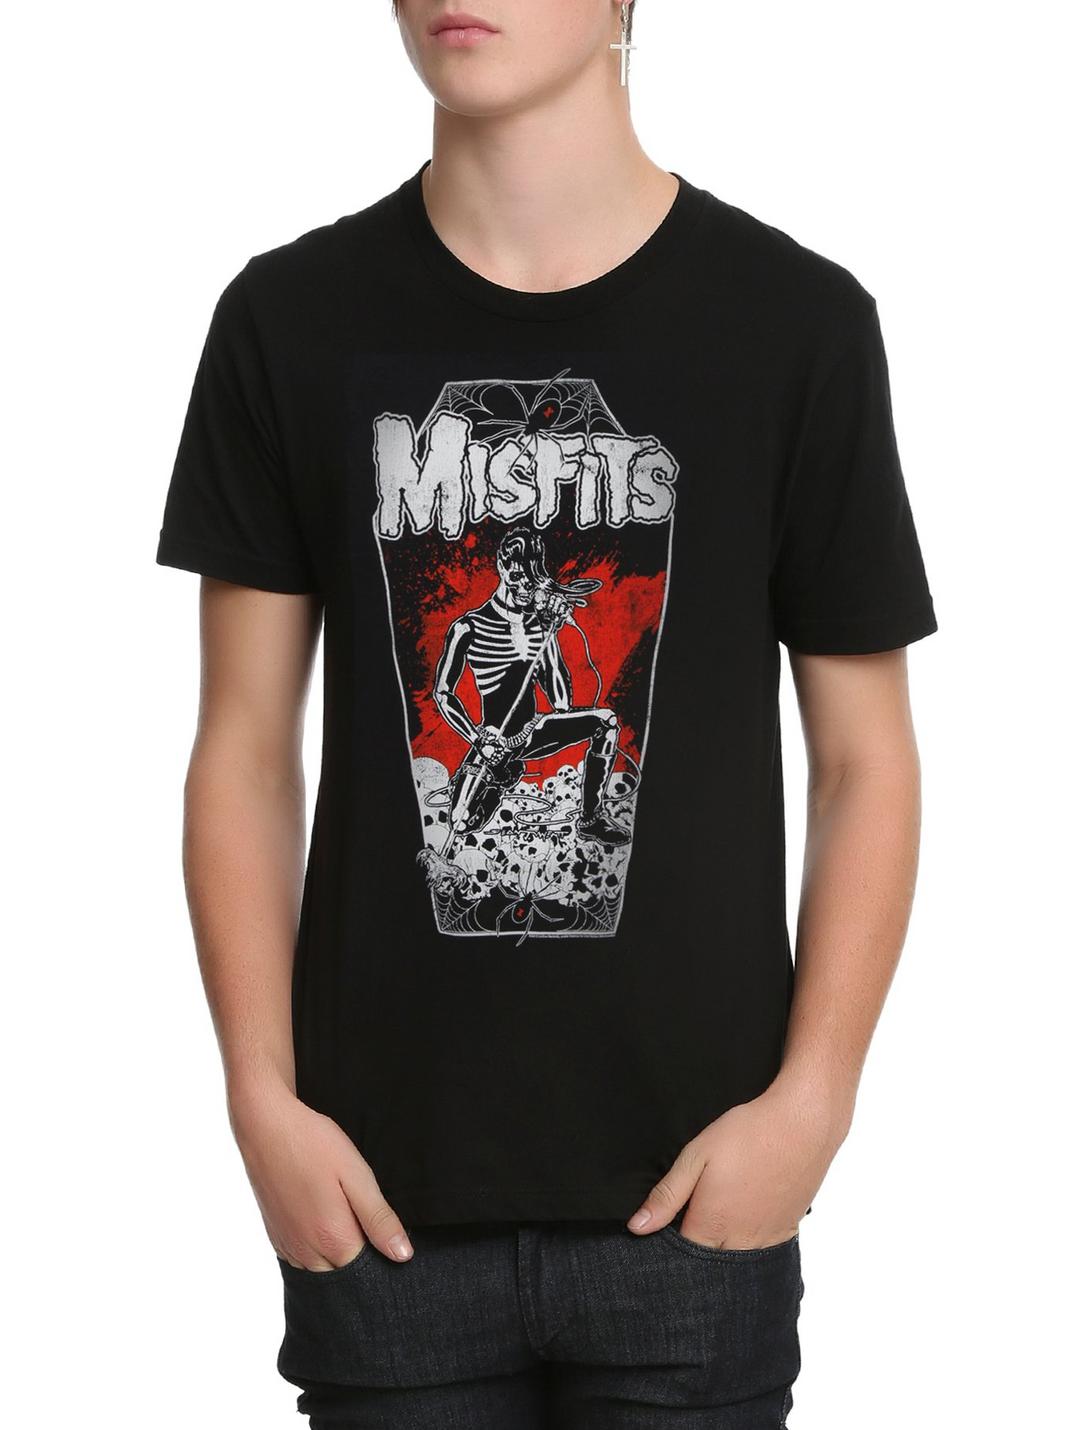 Misfits Brutality Coffin T-Shirt, BLACK, hi-res